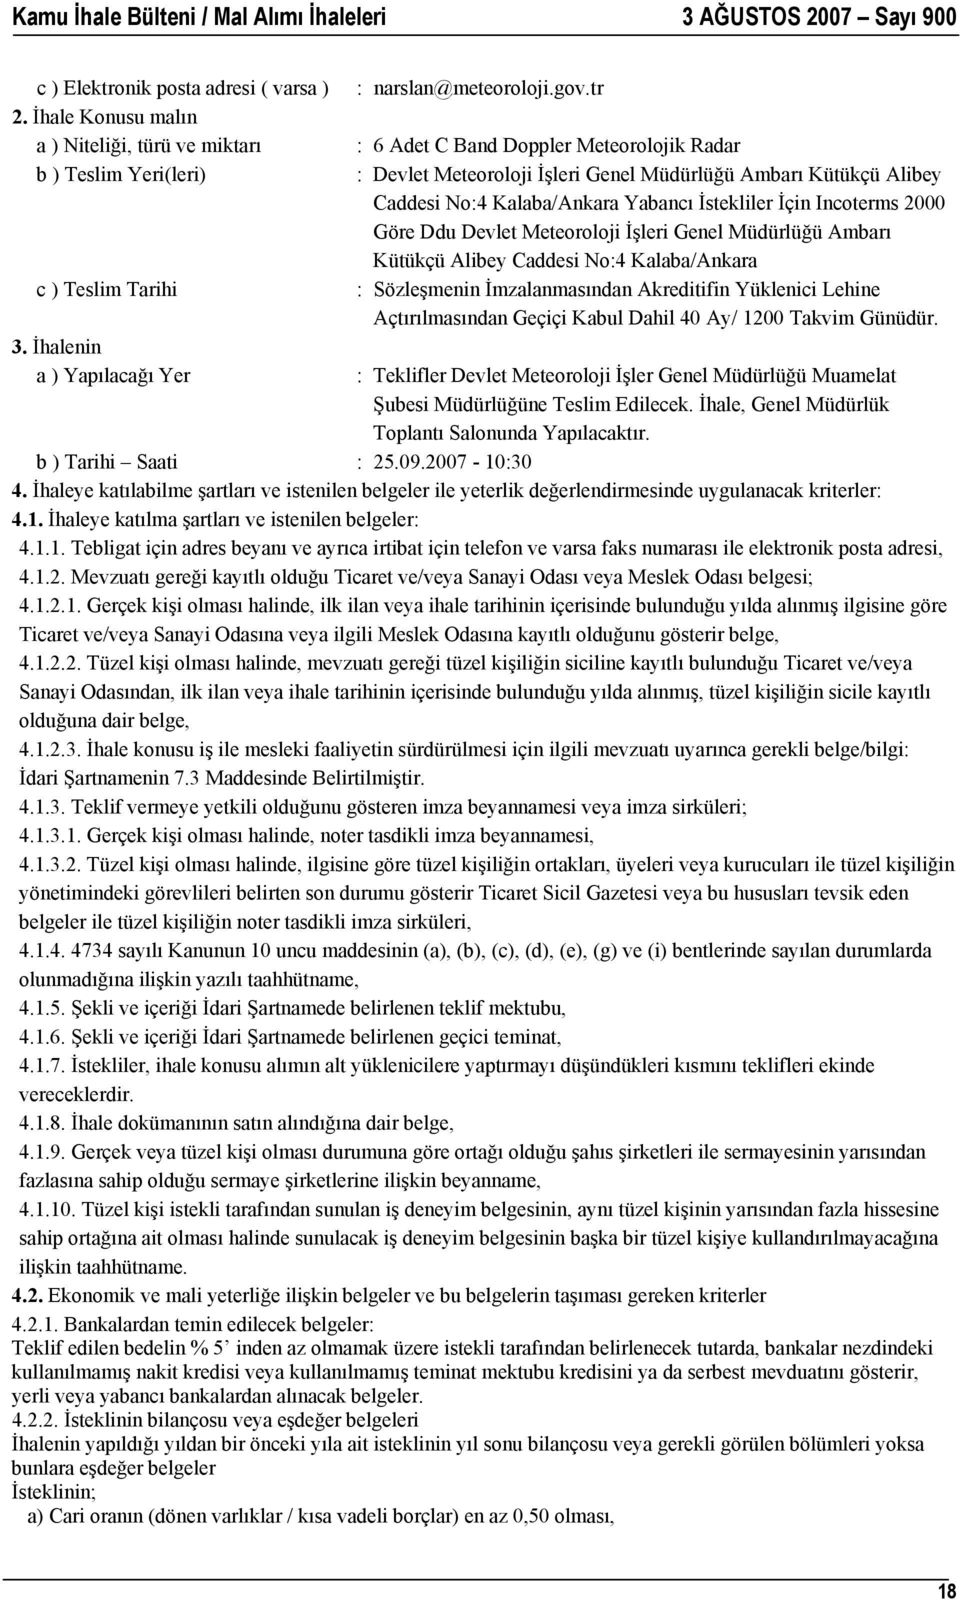 Meteoroloji İşleri Genel Müdürlüğü Ambarı Kütükçü Alibey Caddesi No:4 Kalaba/Ankara : Sözleşmenin İmzalanmasından Akreditifin Yüklenici Lehine Açtırılmasından Geçiçi Kabul Dahil 40 Ay/ 1200 Takvim